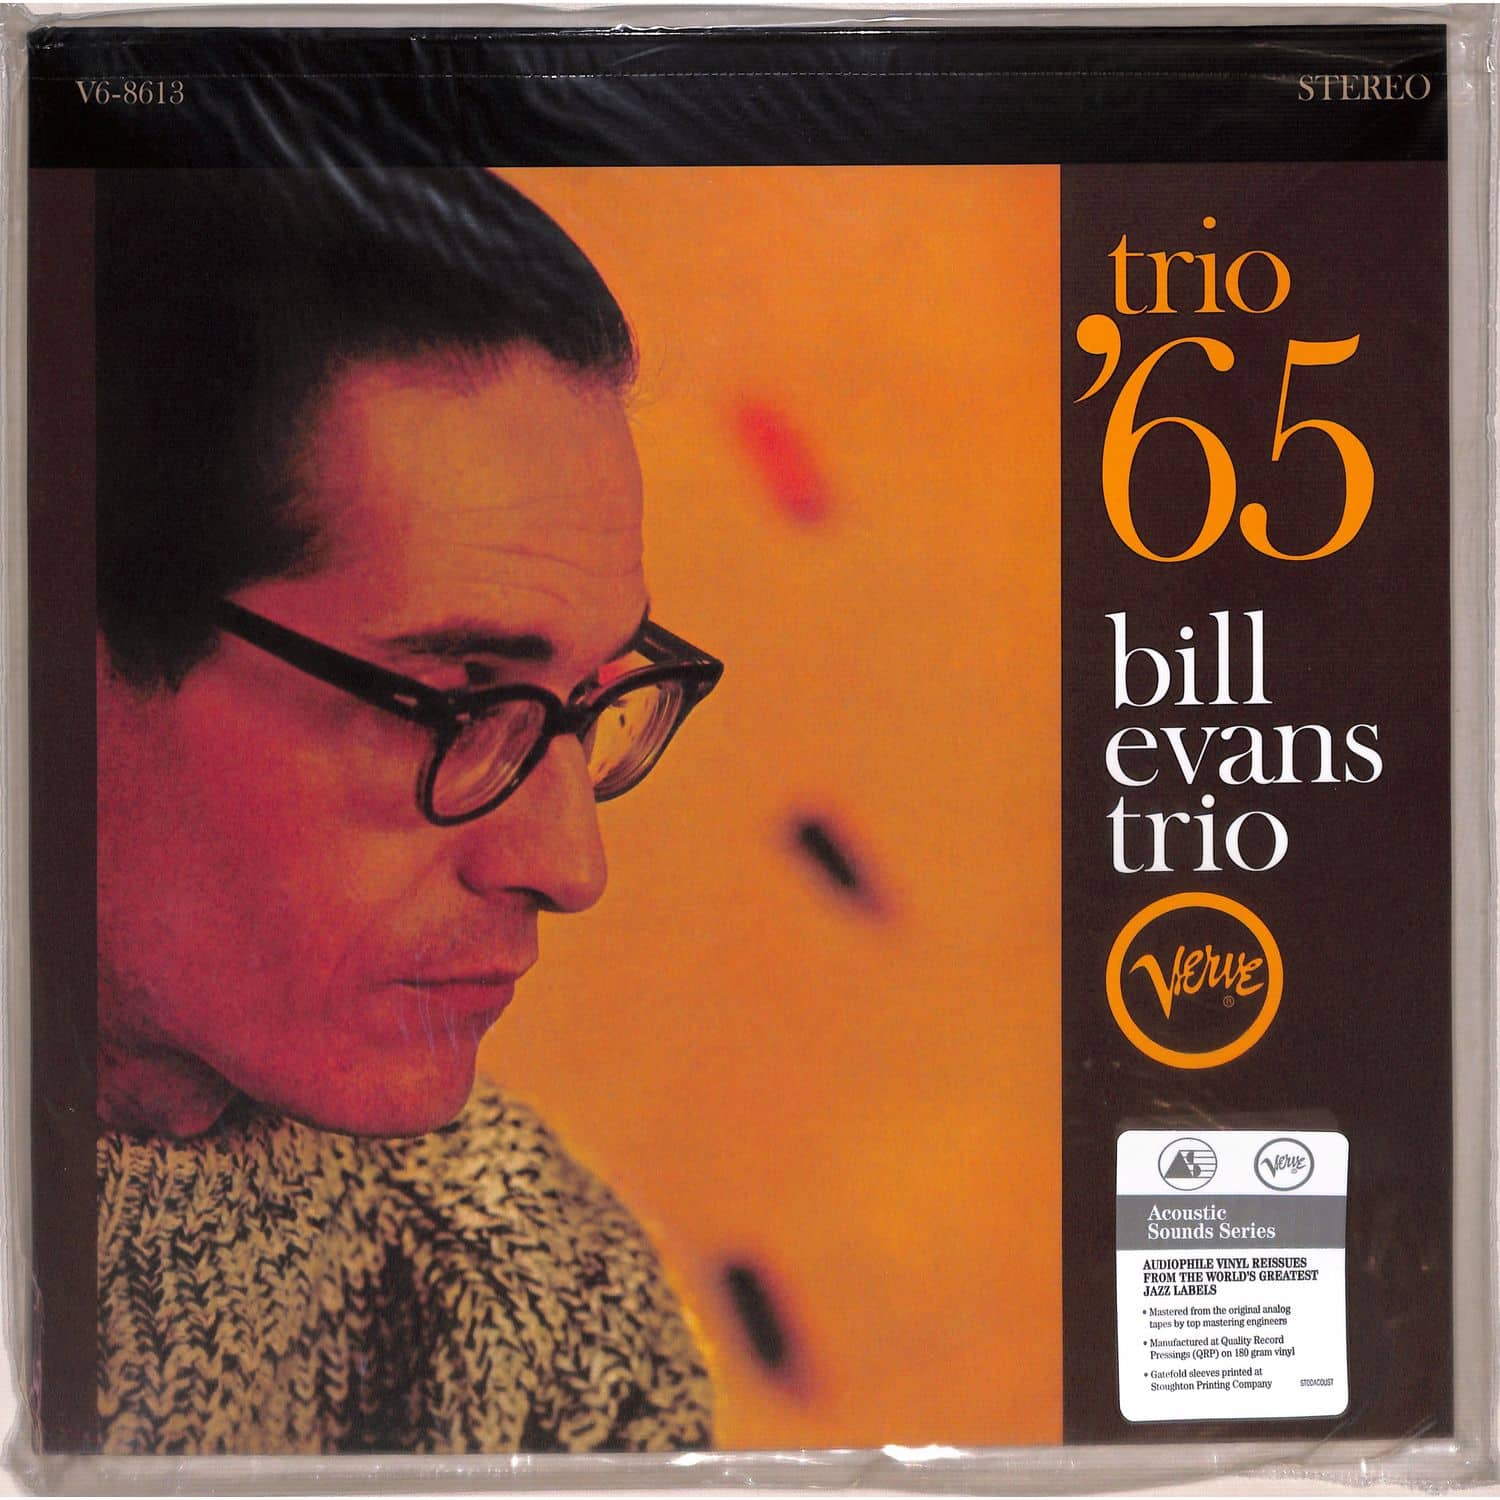 Bill Evans - trio 65 (180g lp)